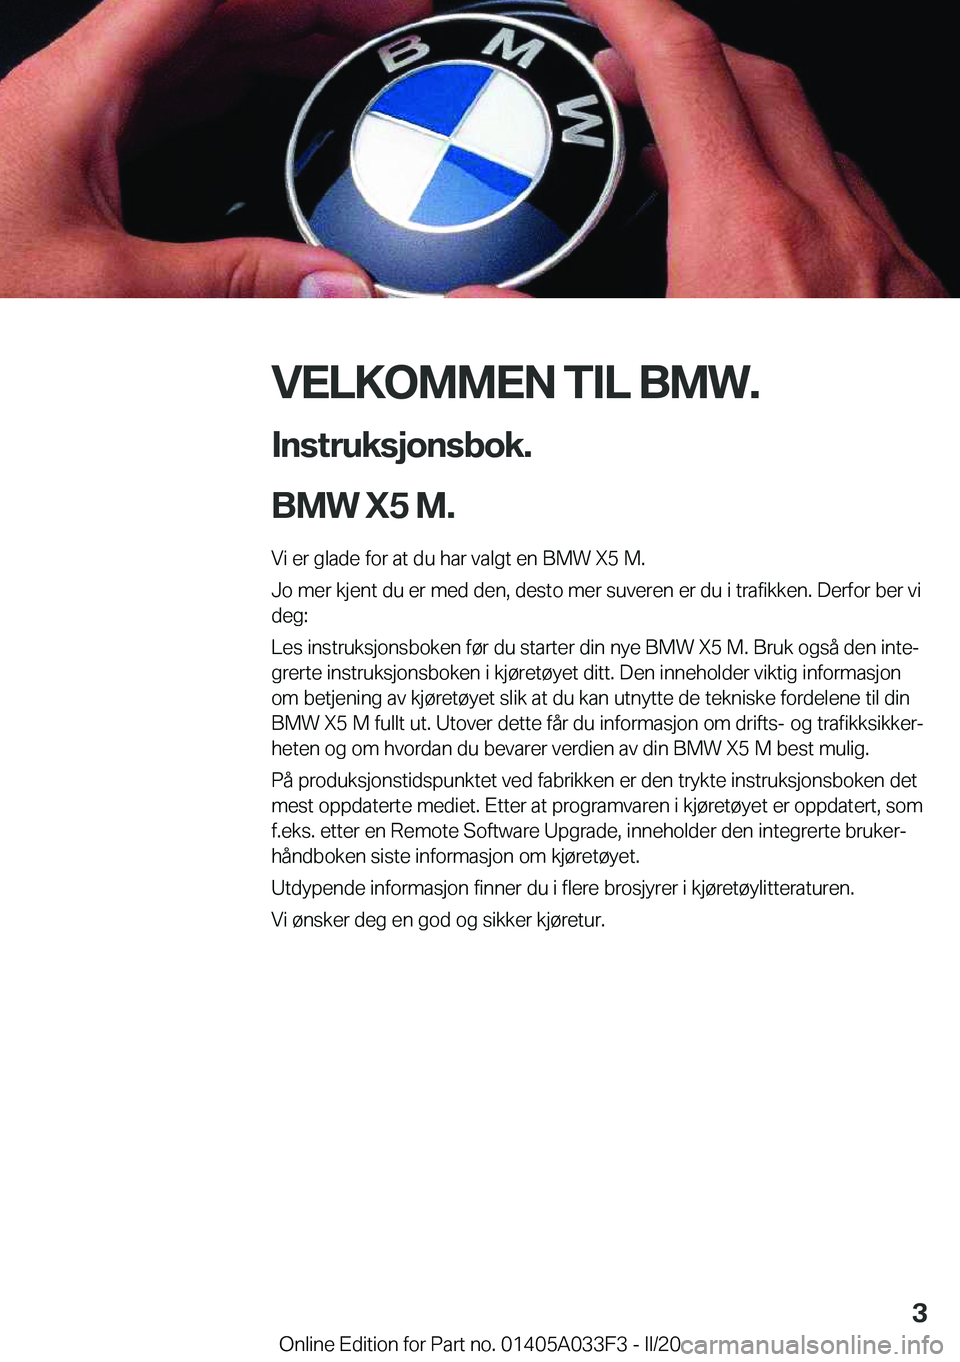 BMW X5 M 2020  InstruksjonsbØker (in Norwegian) �V�E�L�K�O�M�M�E�N��T�I�L��B�M�W�.�I�n�s�t�r�u�k�s�j�o�n�s�b�o�k�.
�B�M�W��X�5��M�.
�V�i��e�r��g�l�a�d�e��f�o�r��a�t��d�u��h�a�r��v�a�l�g�t��e�n��B�M�W��X�5��M�. �J�o��m�e�r��k�j�e�n�